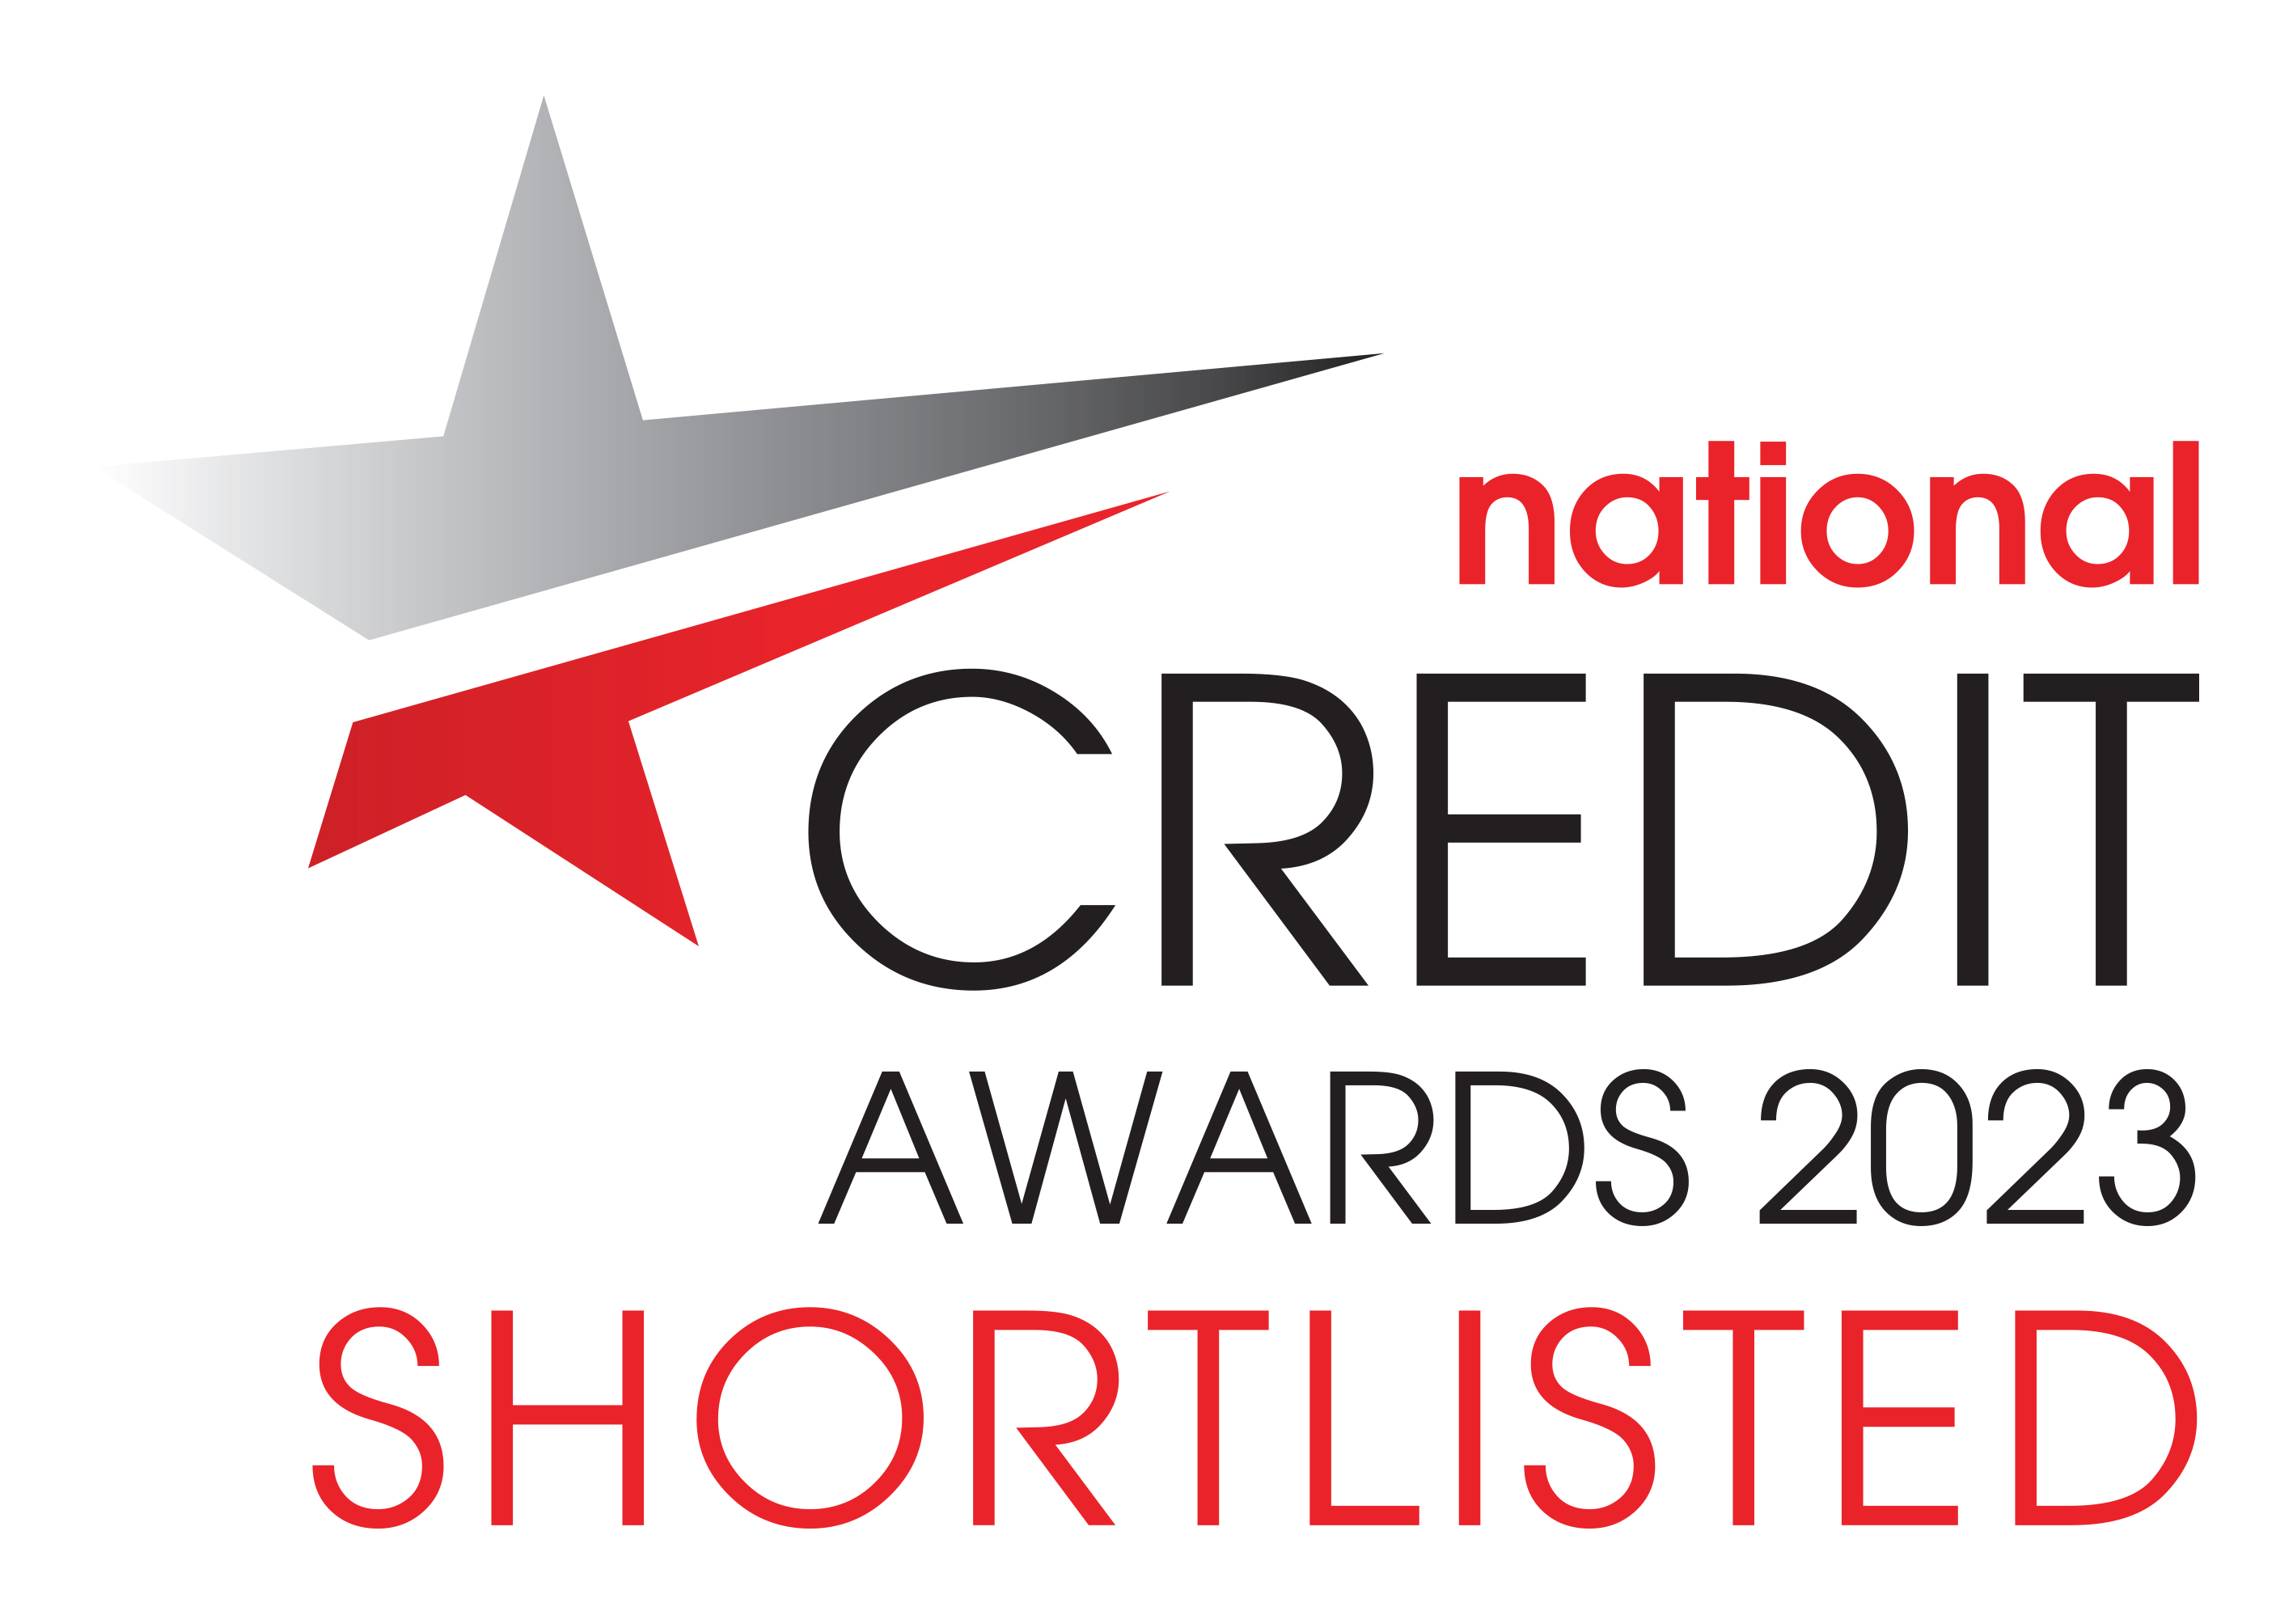 National Credit Awards2023 Shortlisted Outlined